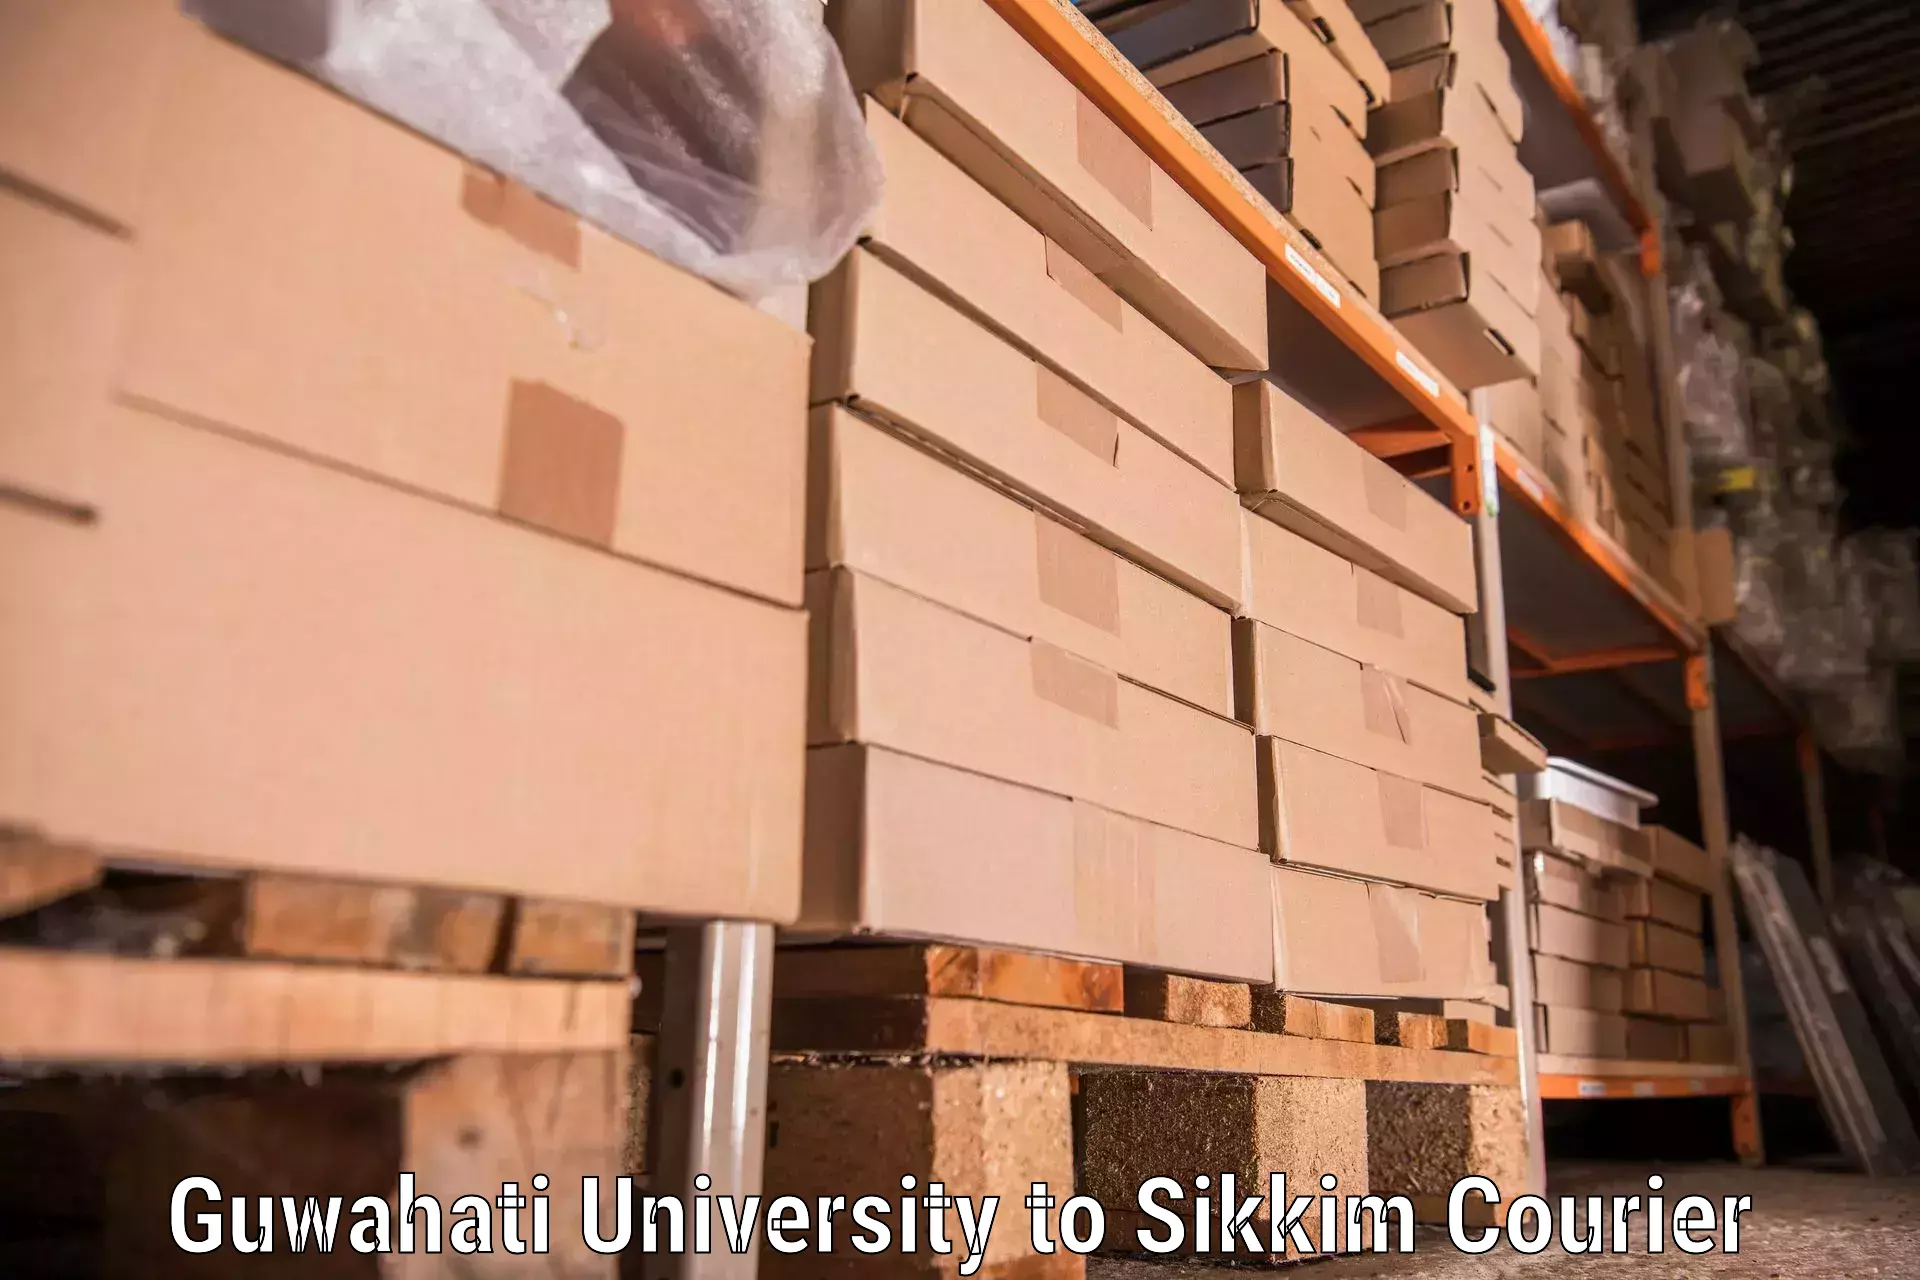 Furniture transport and storage Guwahati University to Mangan